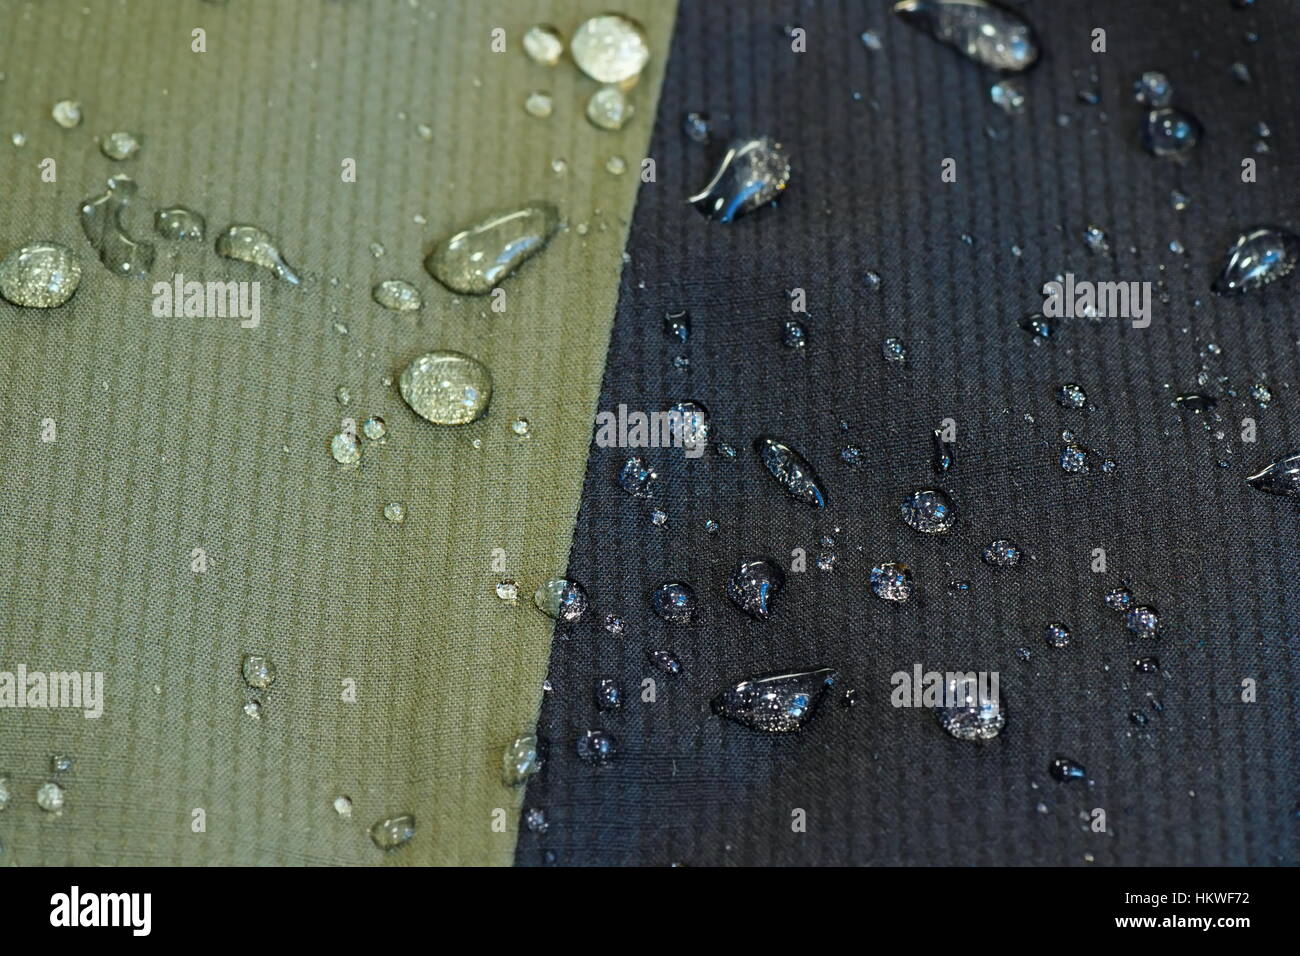 Materiale idrorepellente di una camicia, gocce d'acqua sulla superficie Foto Stock